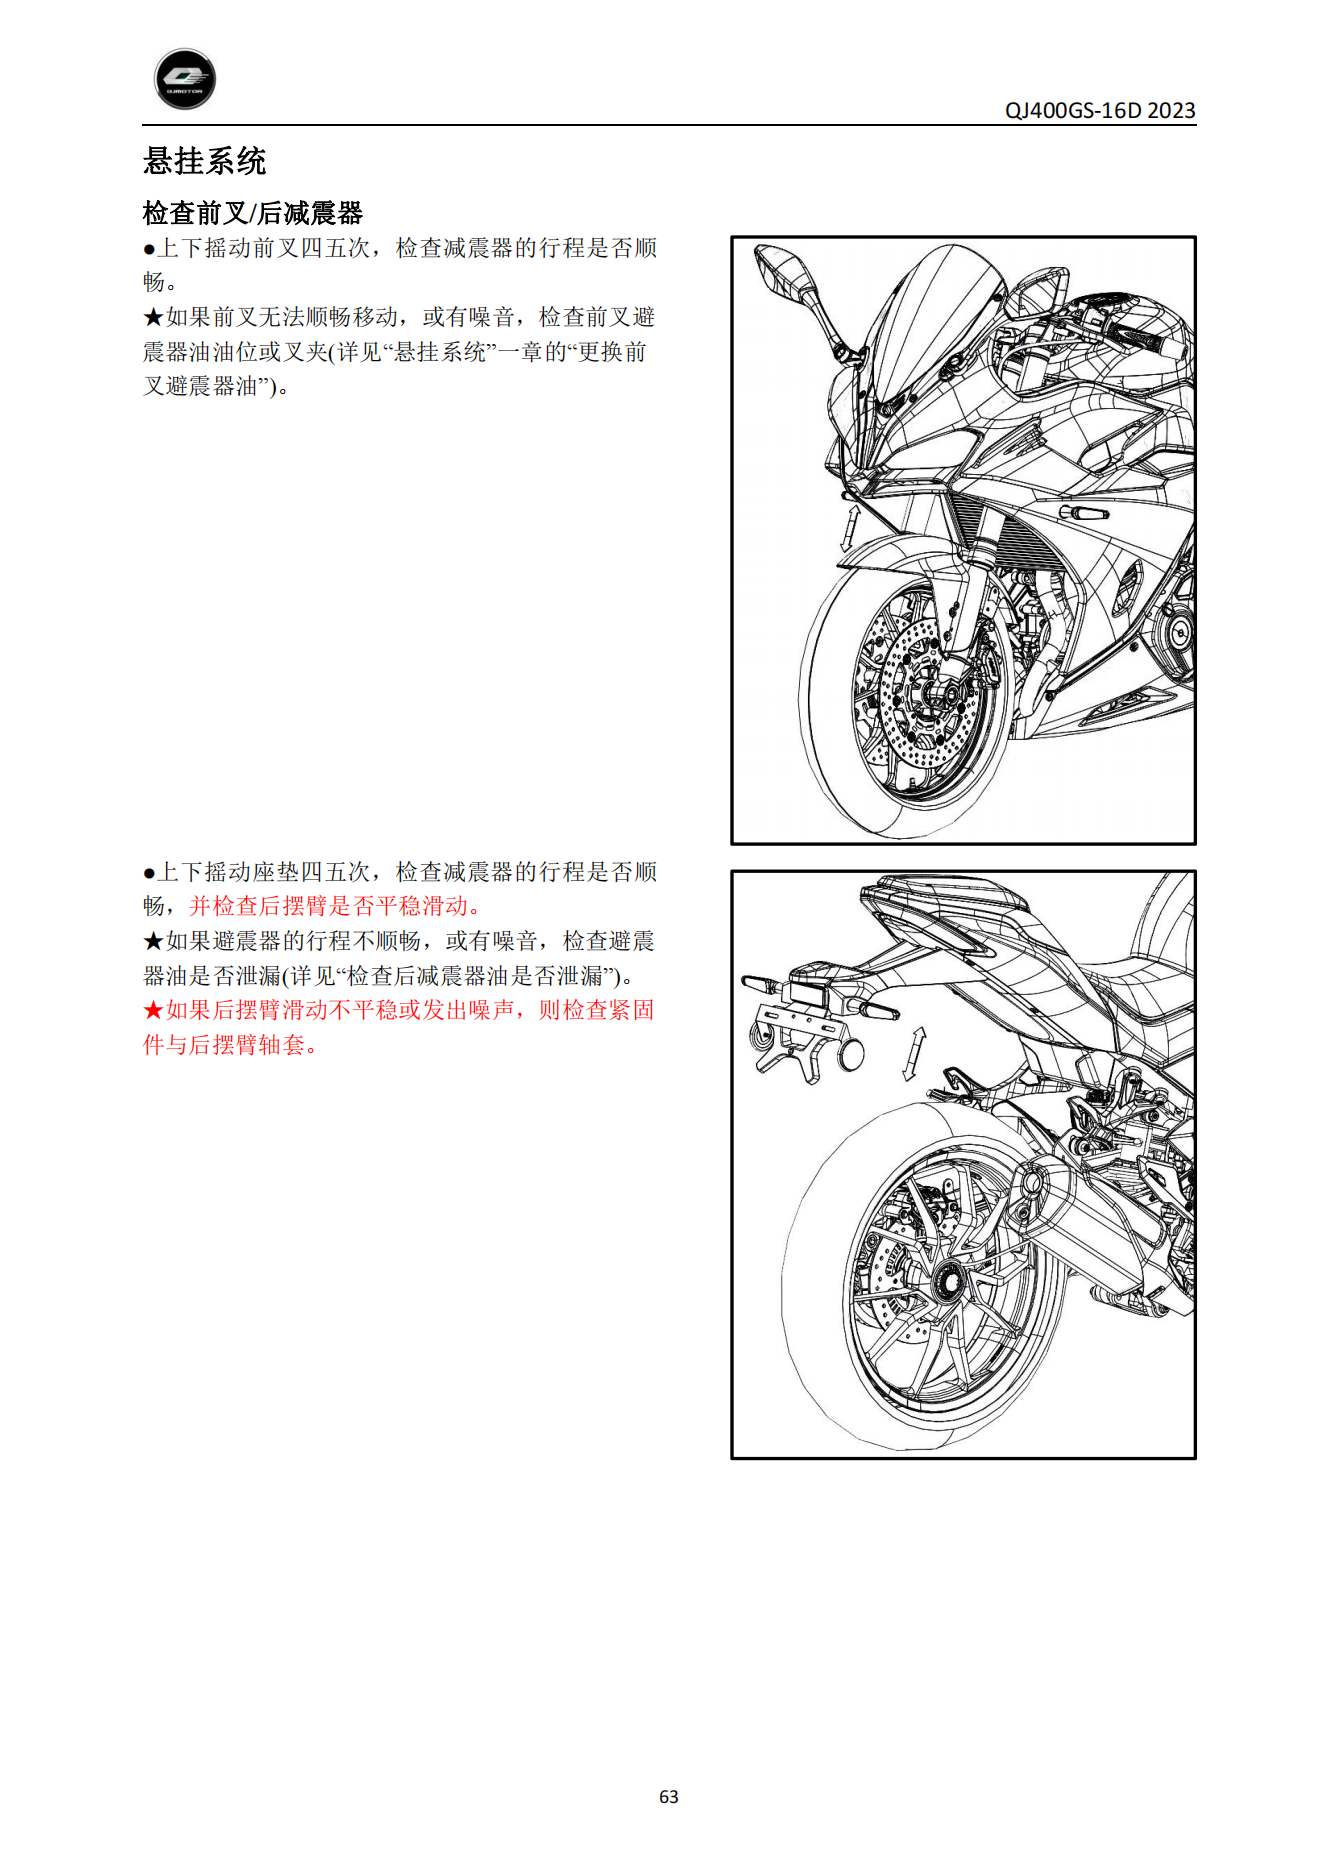 原版中文钱江赛450 QJ400GS-16D维修手册插图3